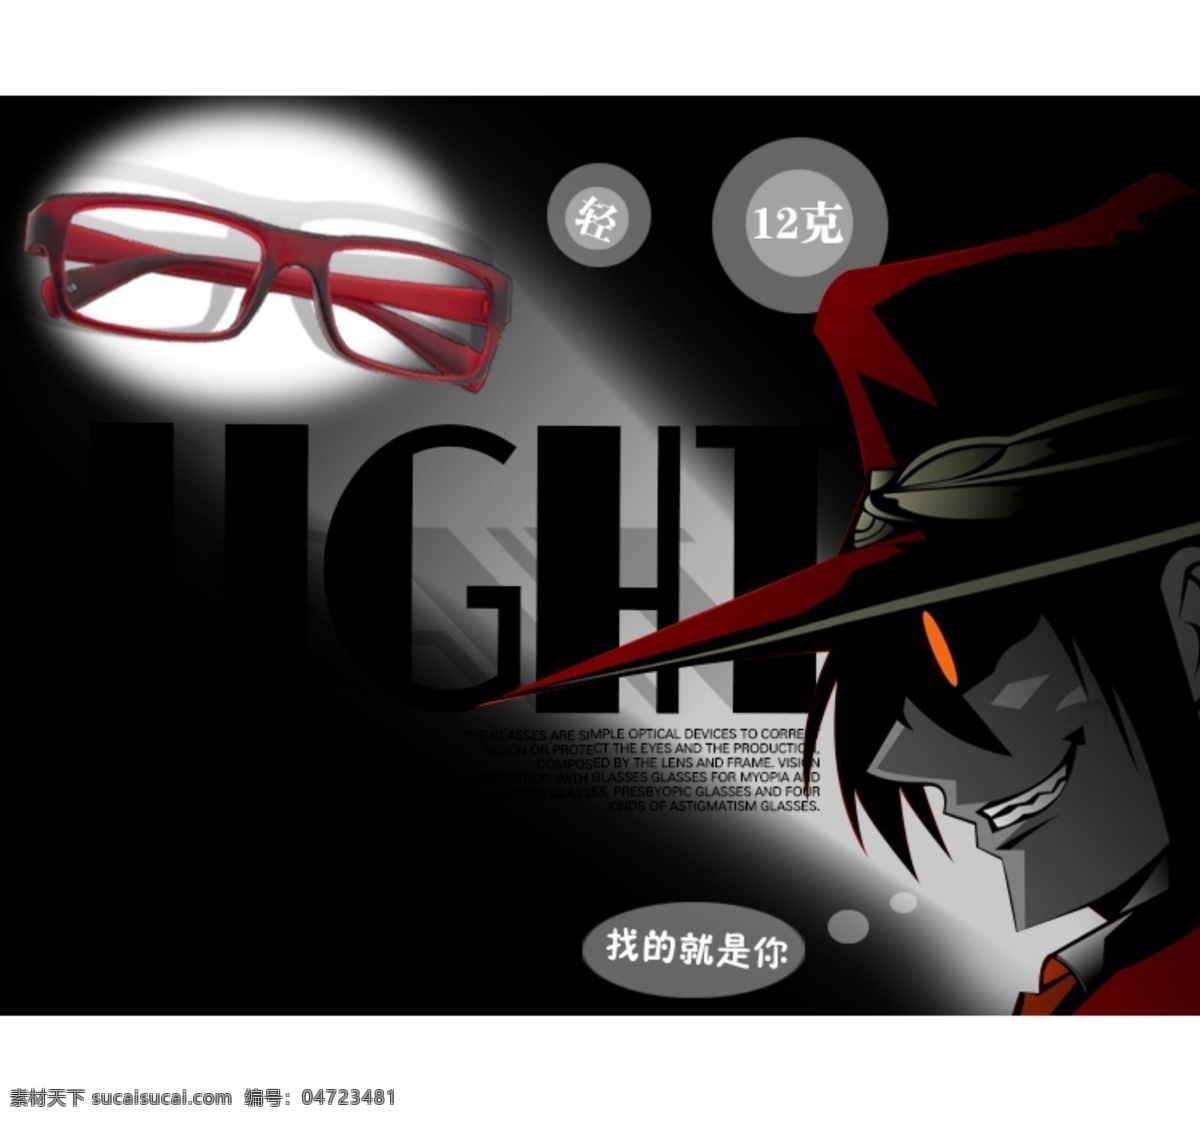 网页模板 眼镜广告 源文件 中文模板 眼镜 广告创意 图 模板下载 眼镜创意 随创 网页素材